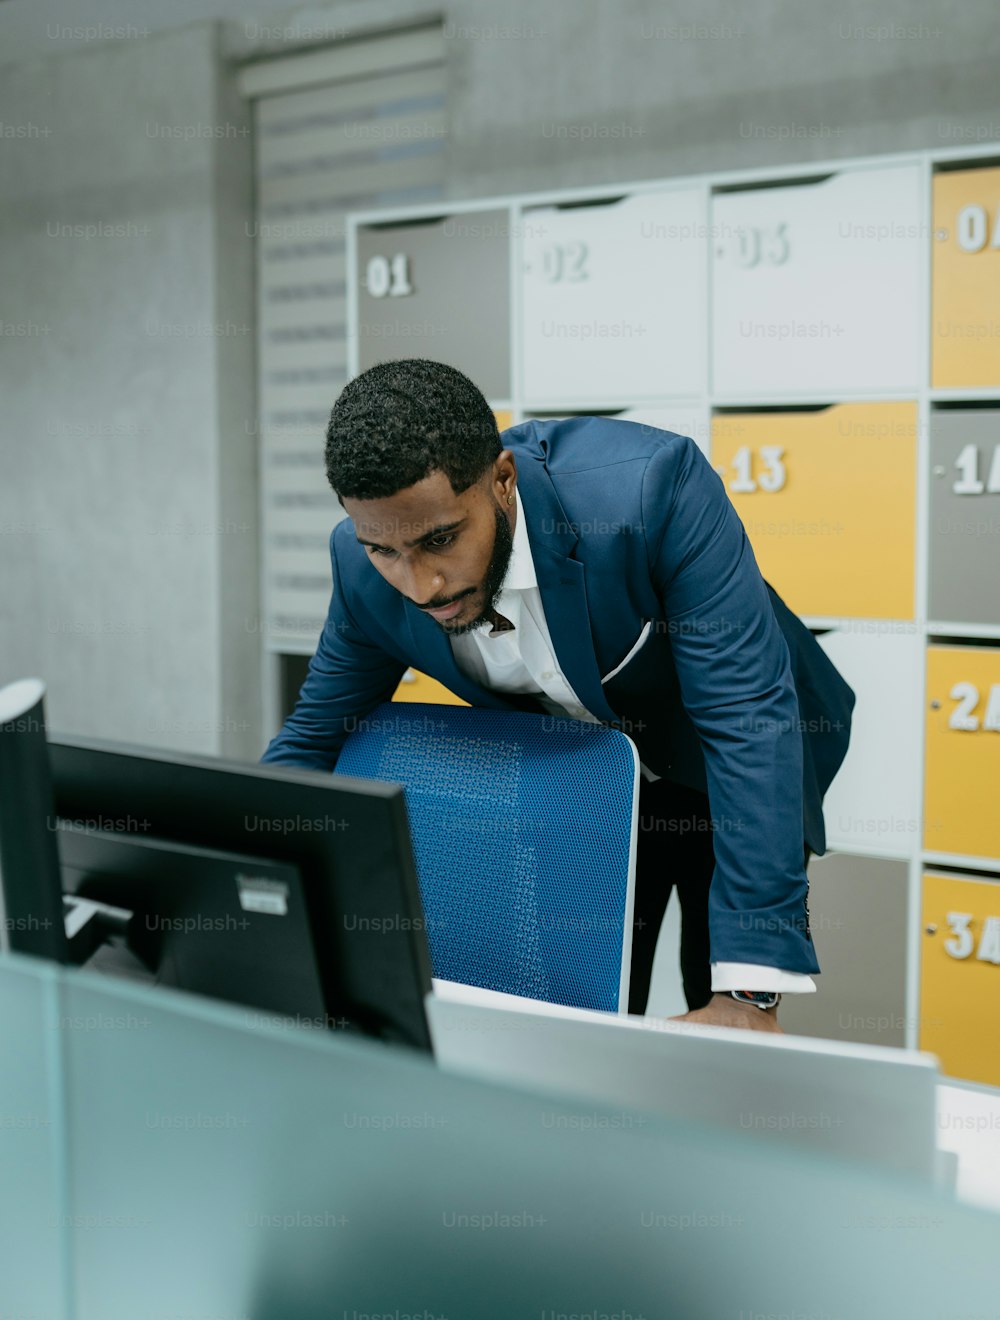 Un uomo in giacca e cravatta appoggiato sul monitor di un computer